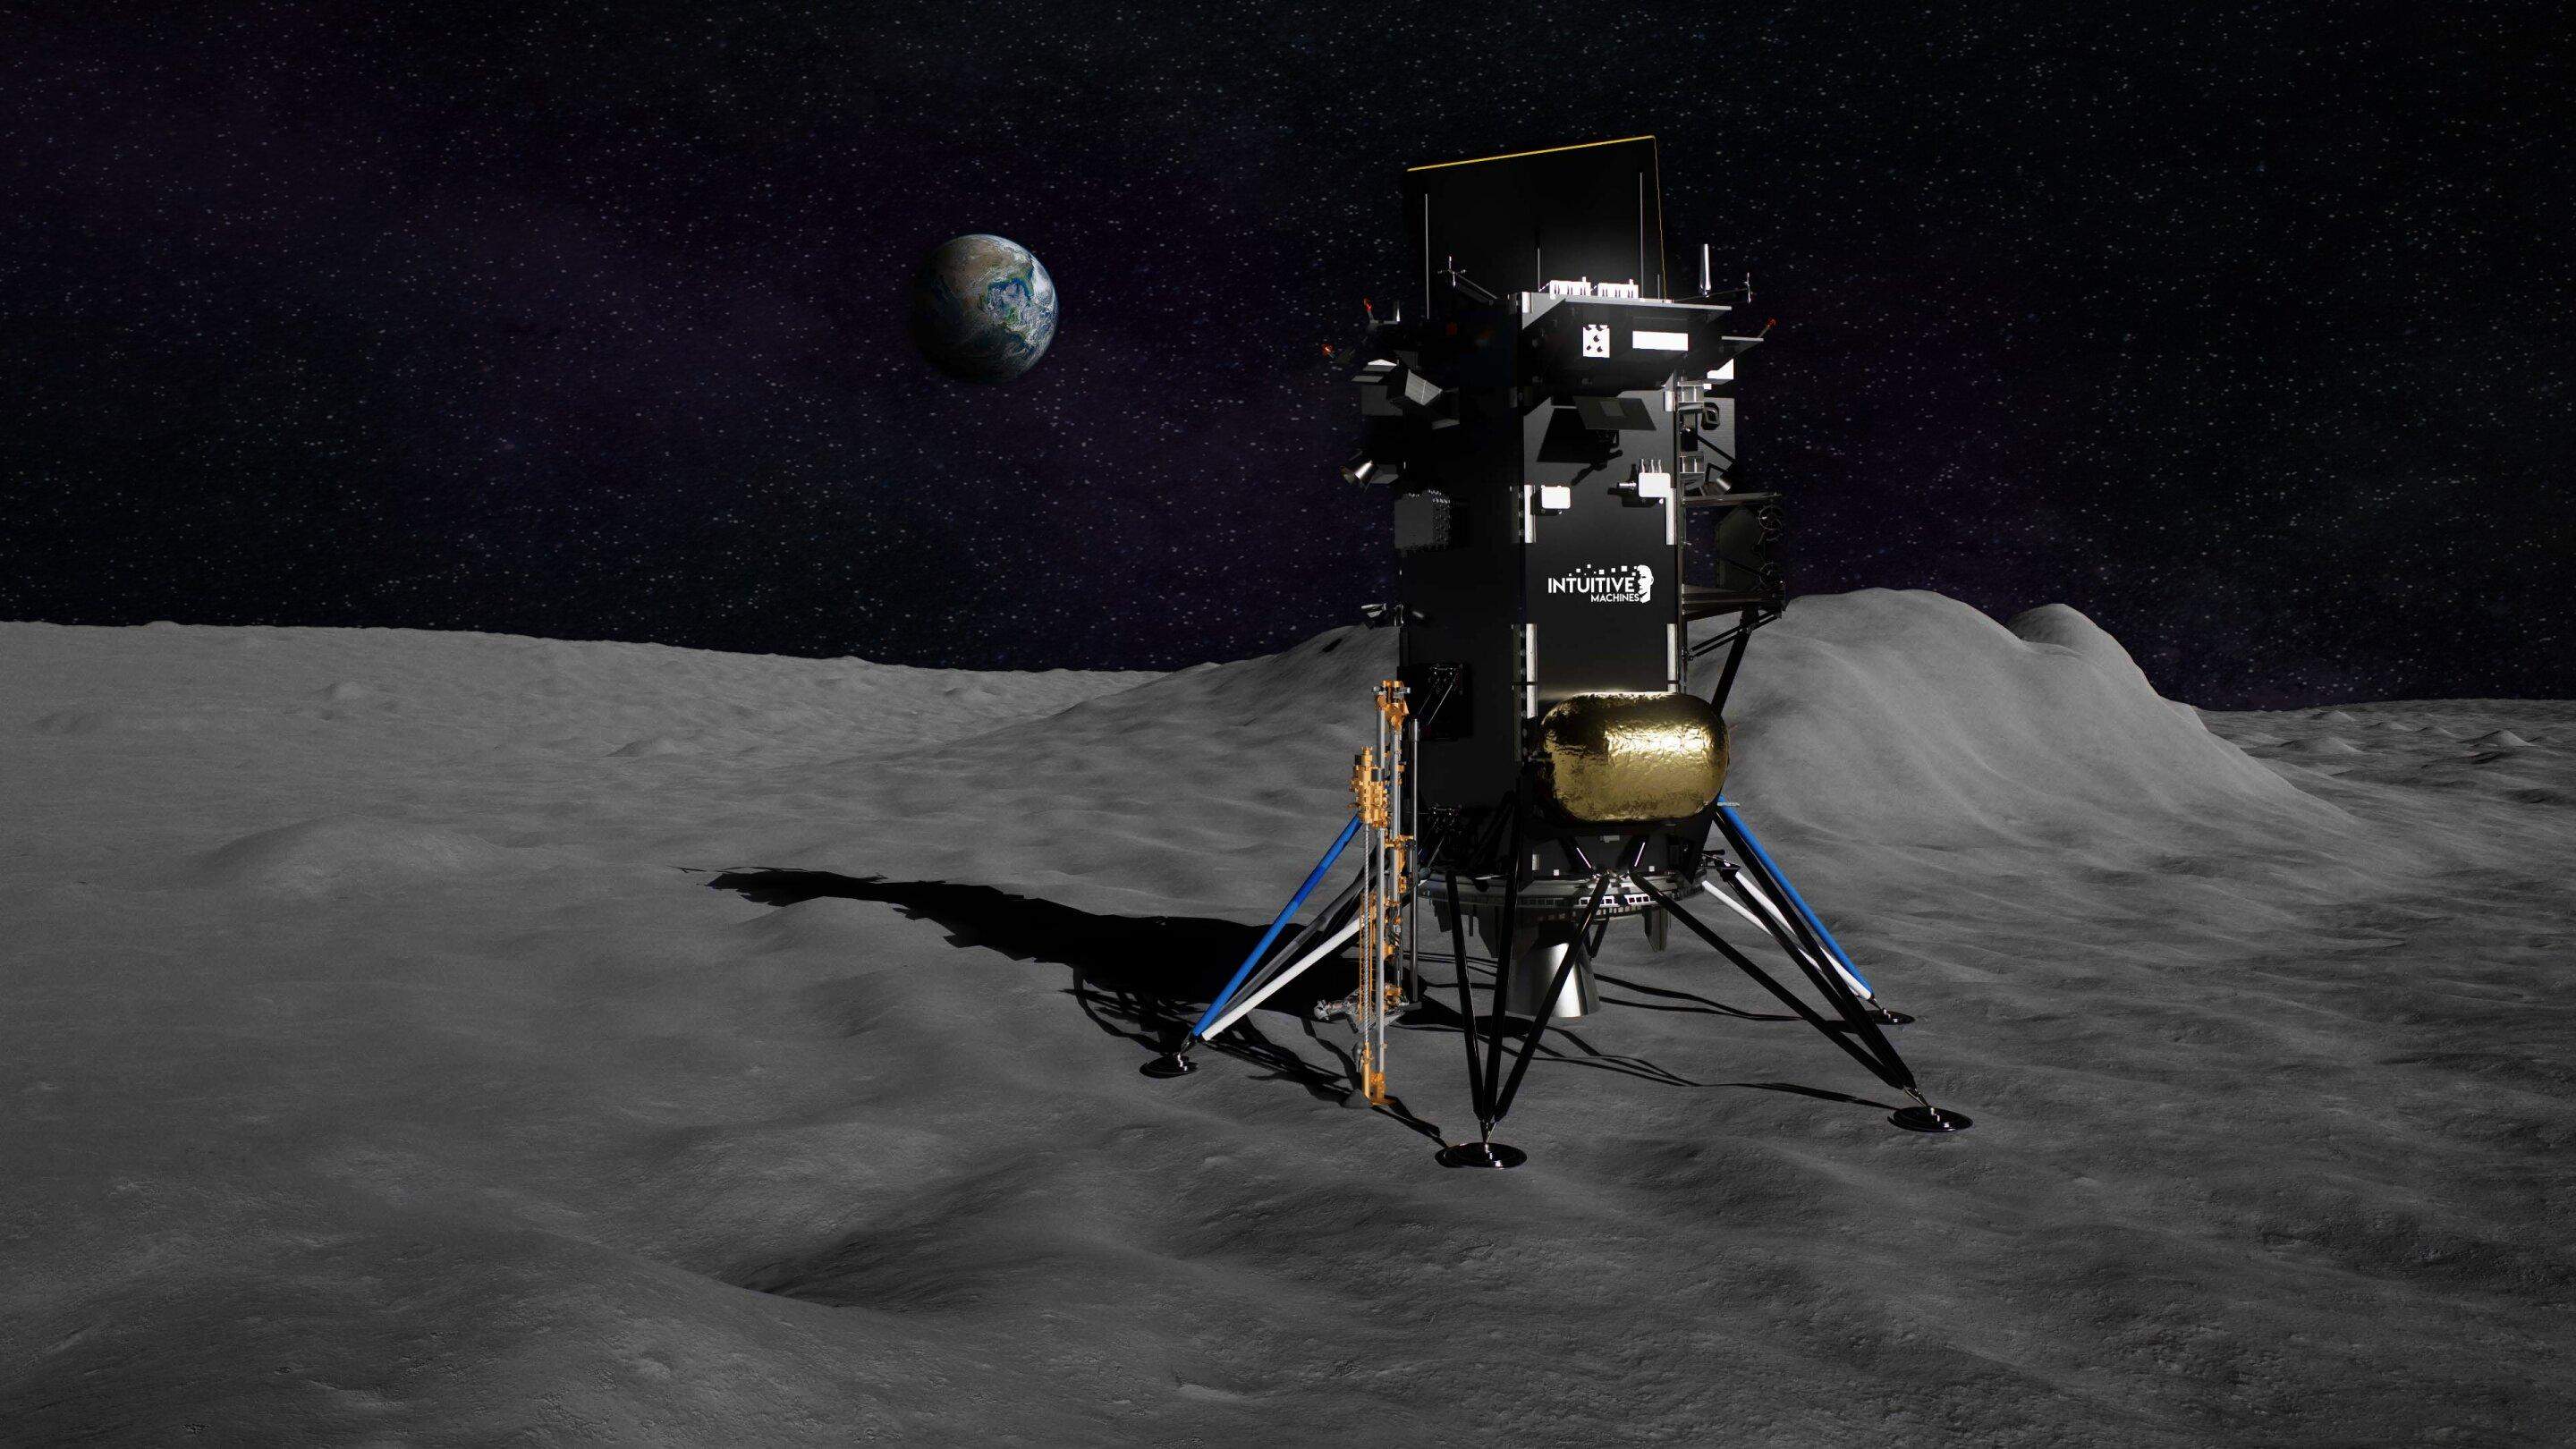 Ілюстрація місячного посадкового модуля